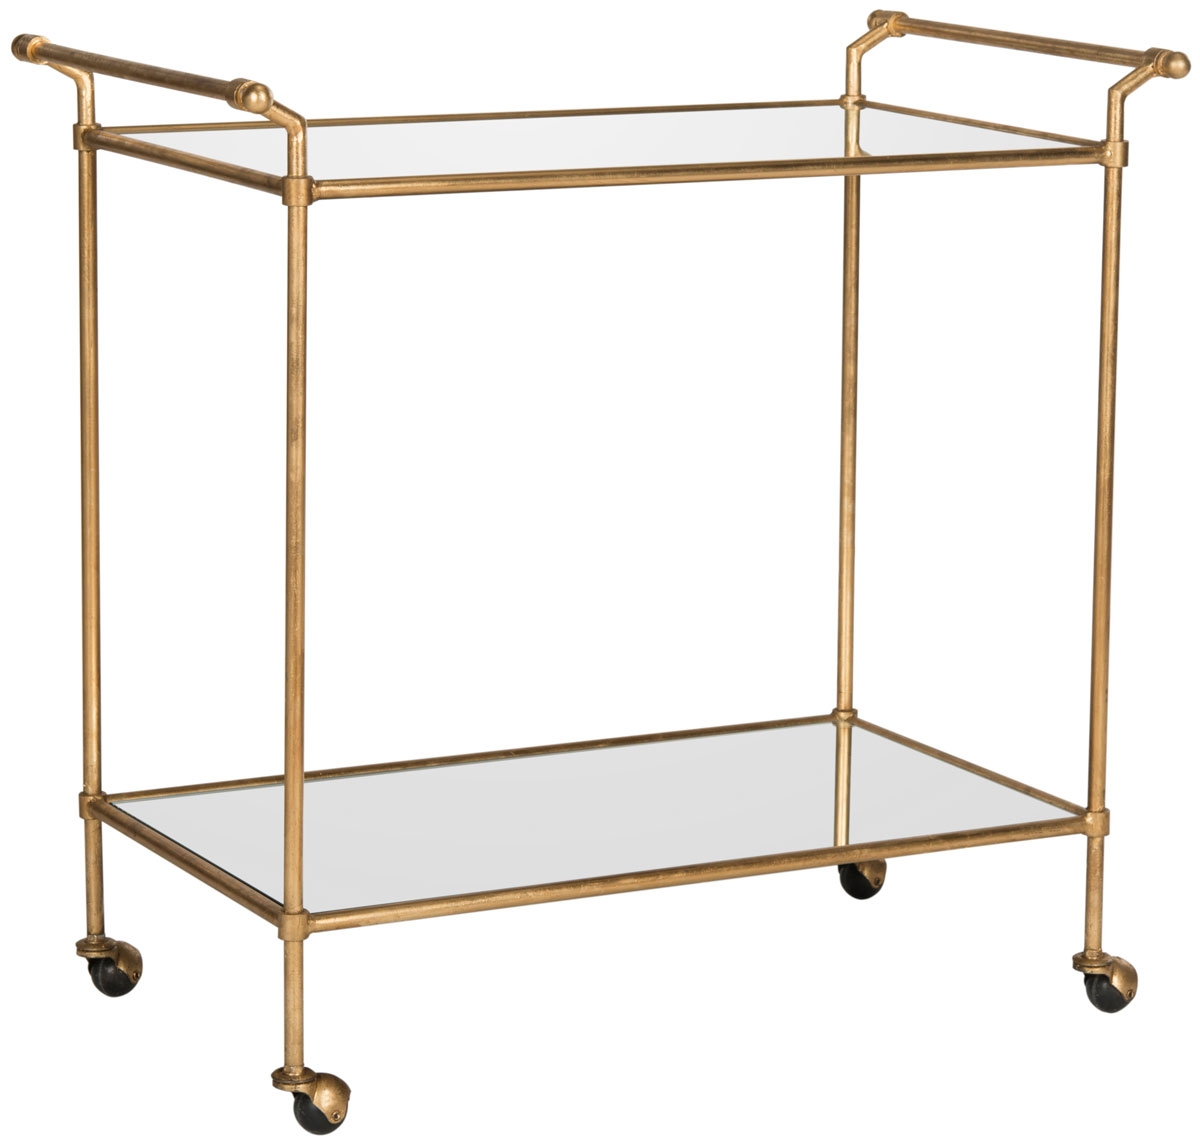 Felicity Bar Cart - Gold - Arlo Home - Image 3